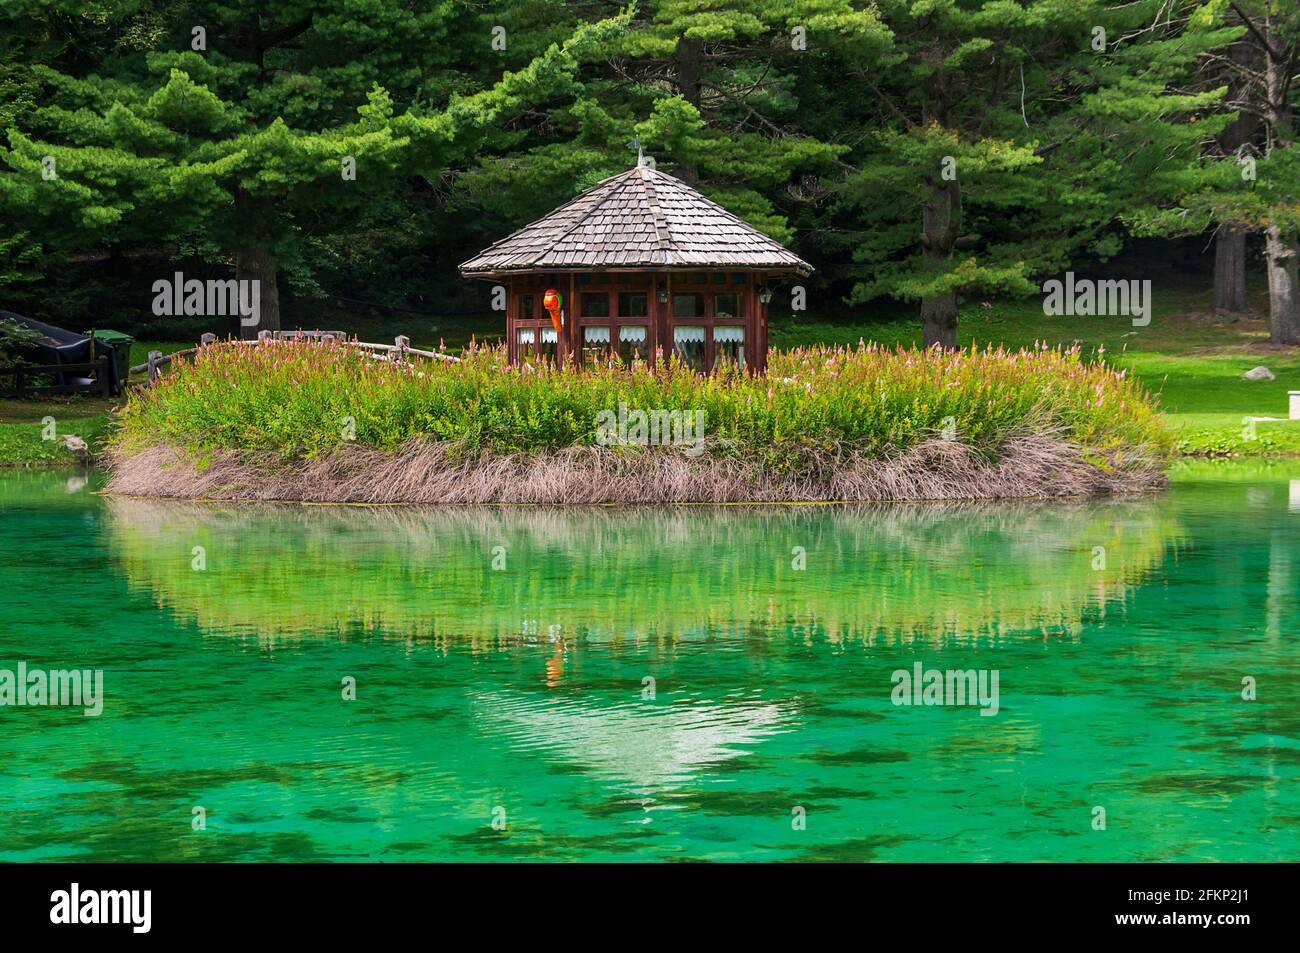 Petite maison en bois reflétée dans le lac Gover, Gressoney-Saint-Jean, Vallée d'Aoste, Italie - Europe. Banque D'Images